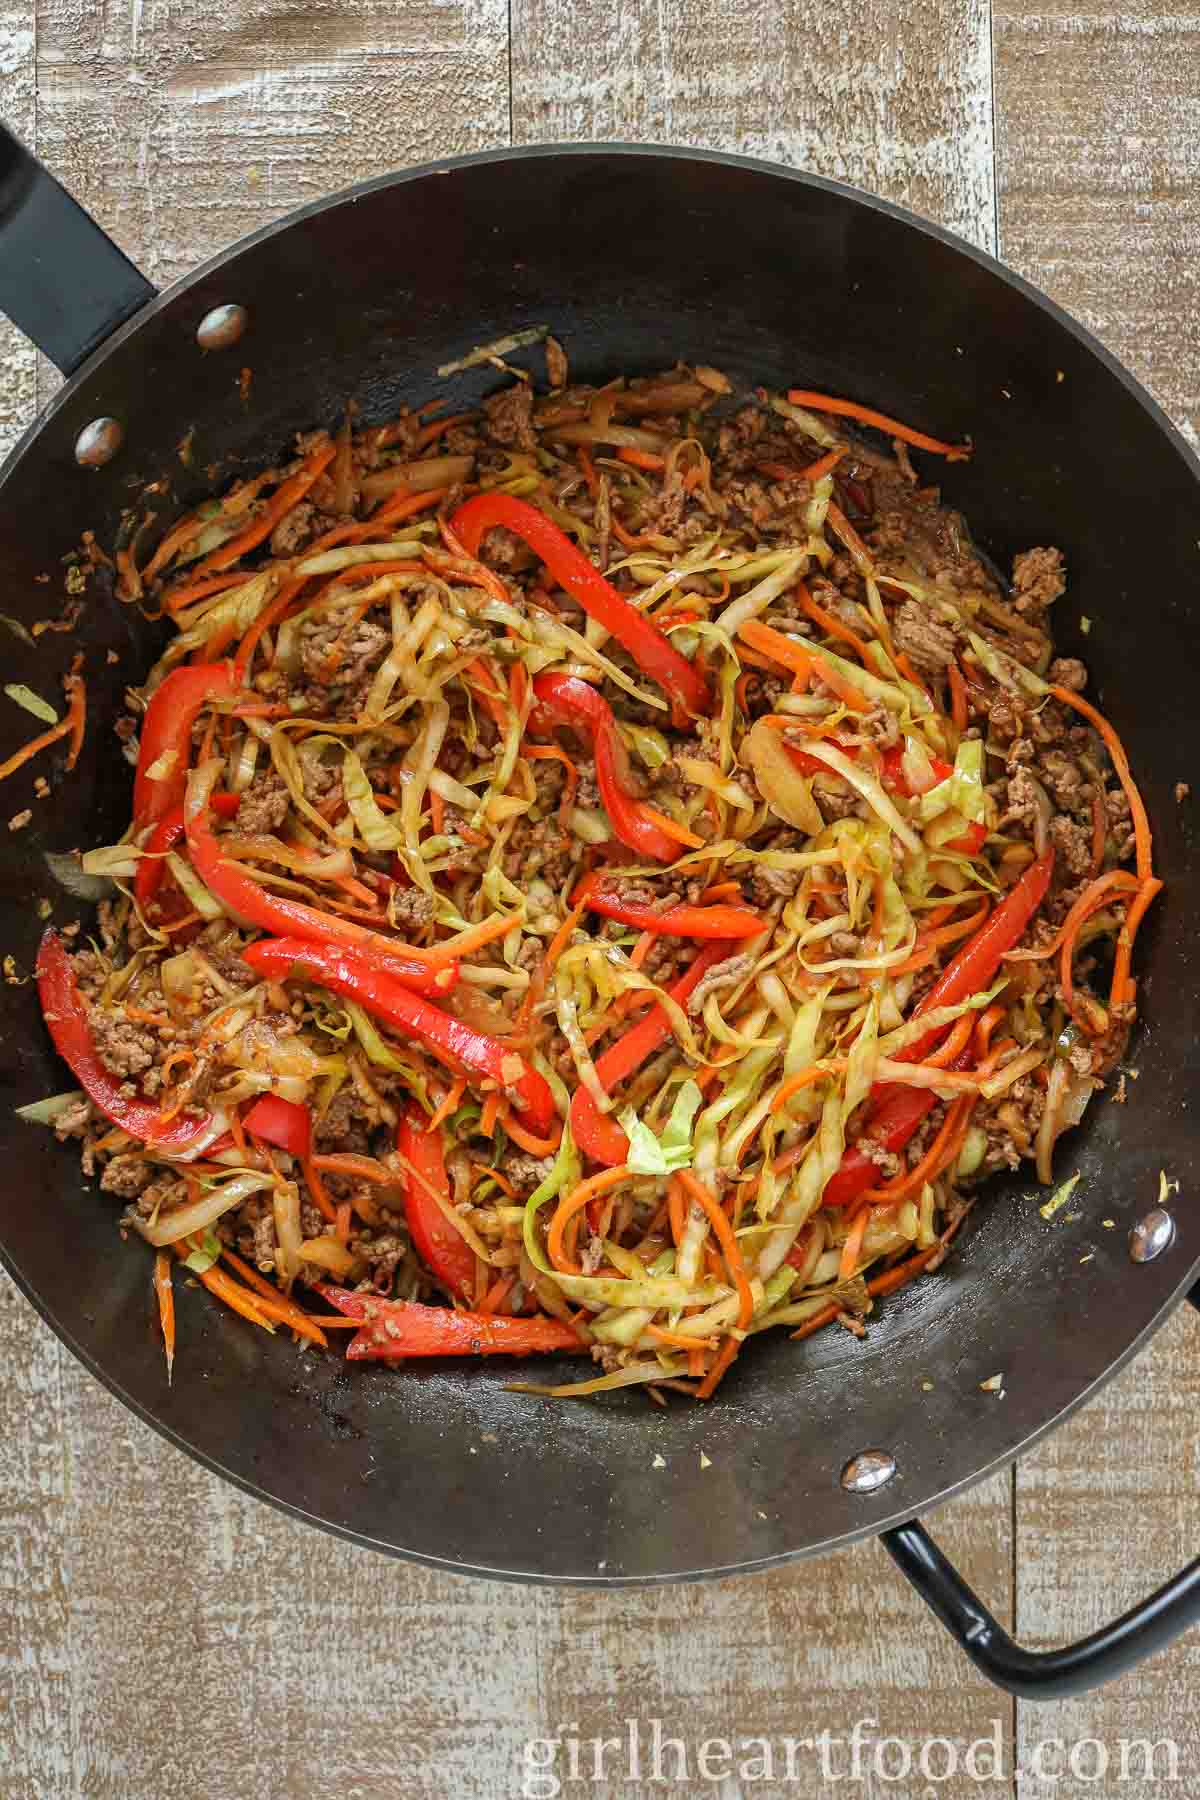 Ground beef stir-fry in a wok.